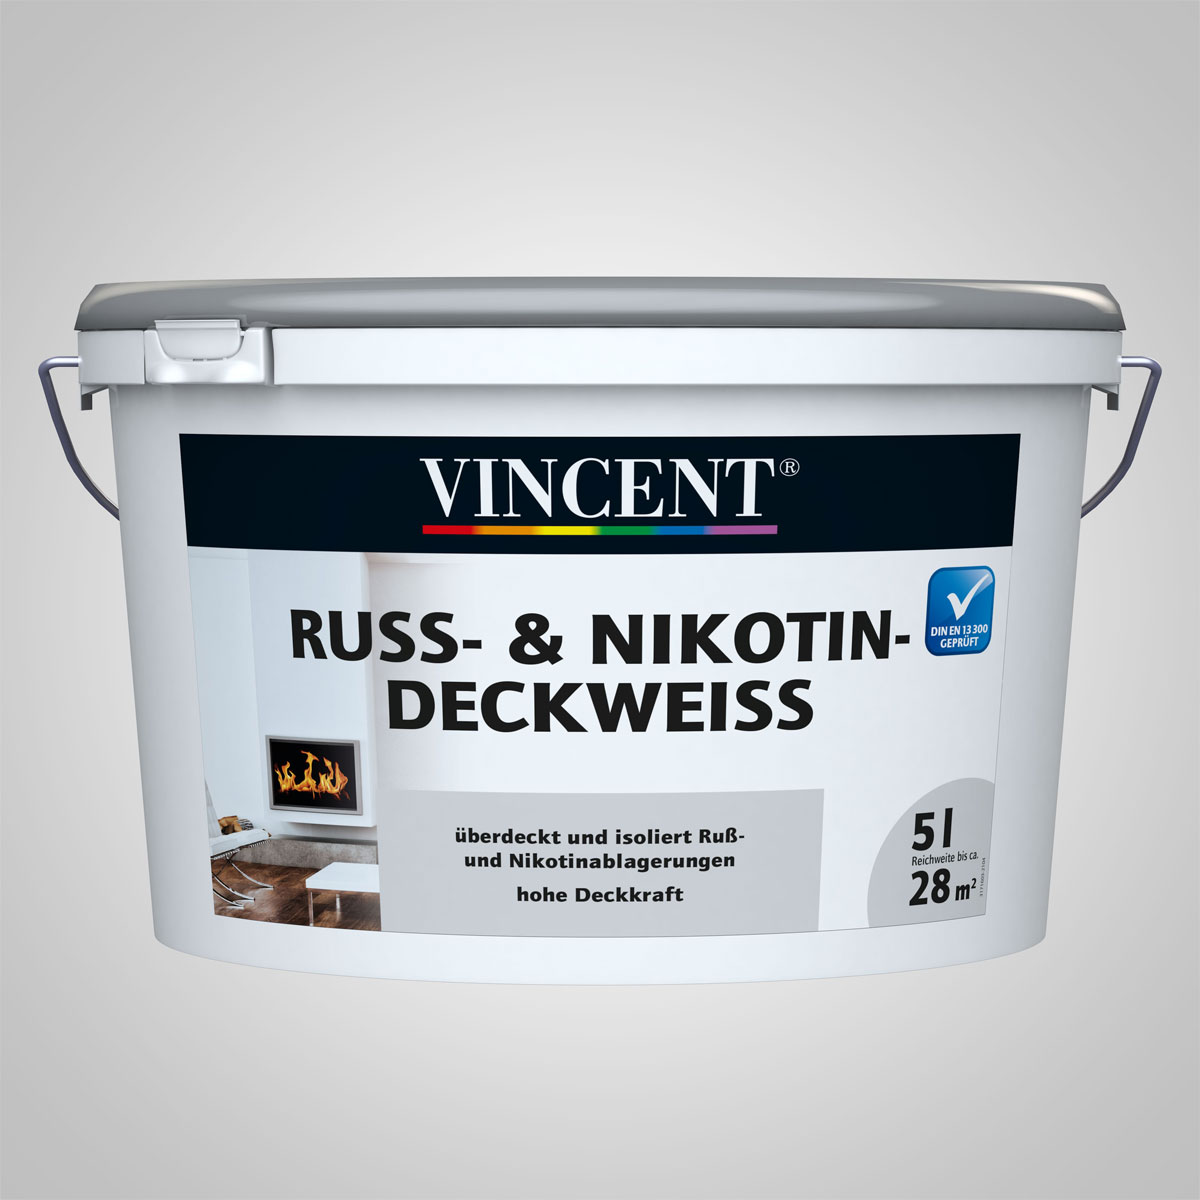 Vincent Ruß- und Nikotin-Deckweiß 5 L, 5